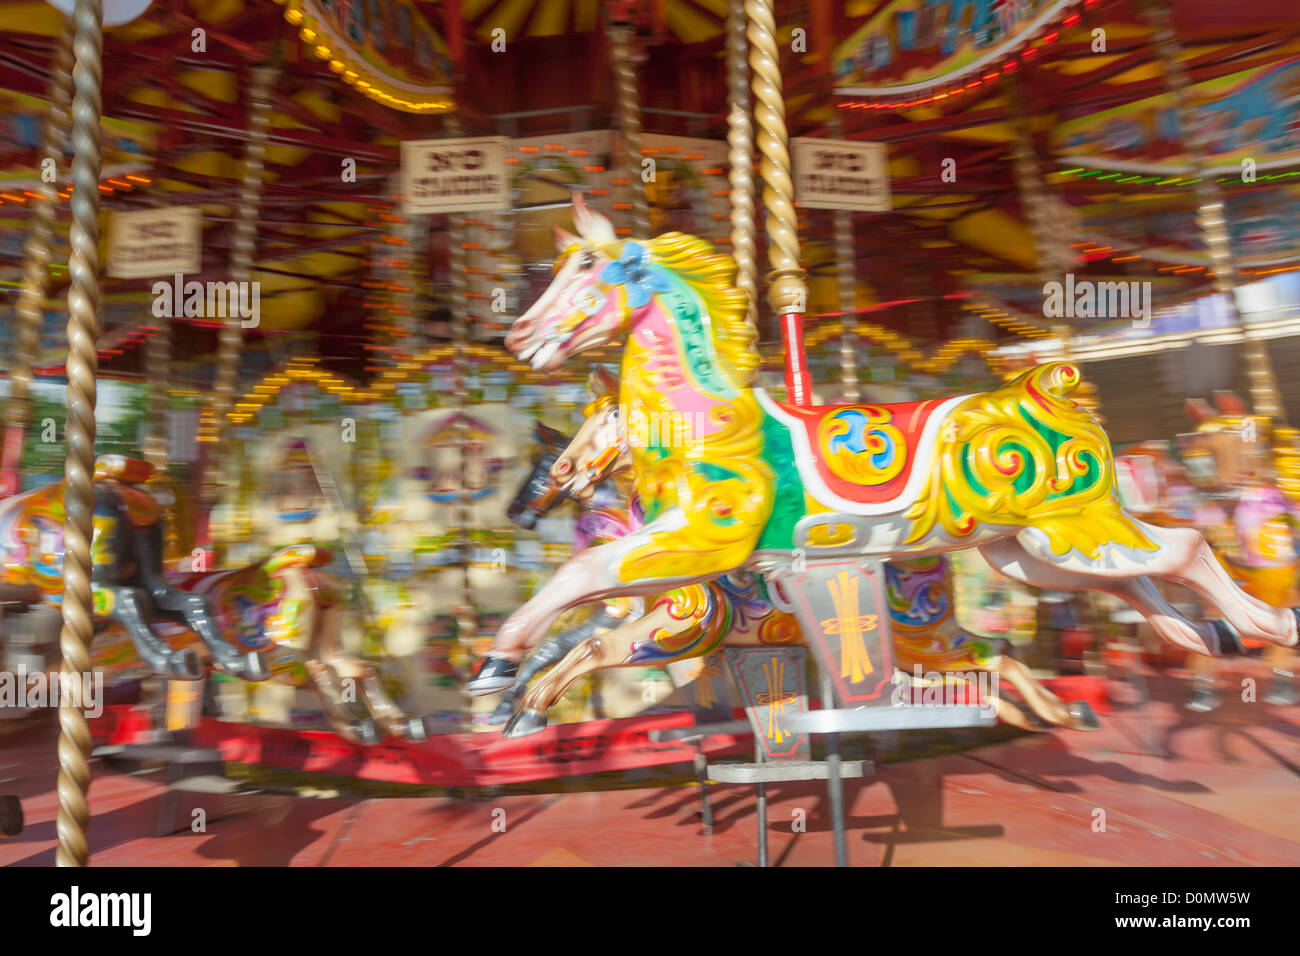 En un carrusel de caballos colorido paseo de feria, REINO UNIDO Foto de stock